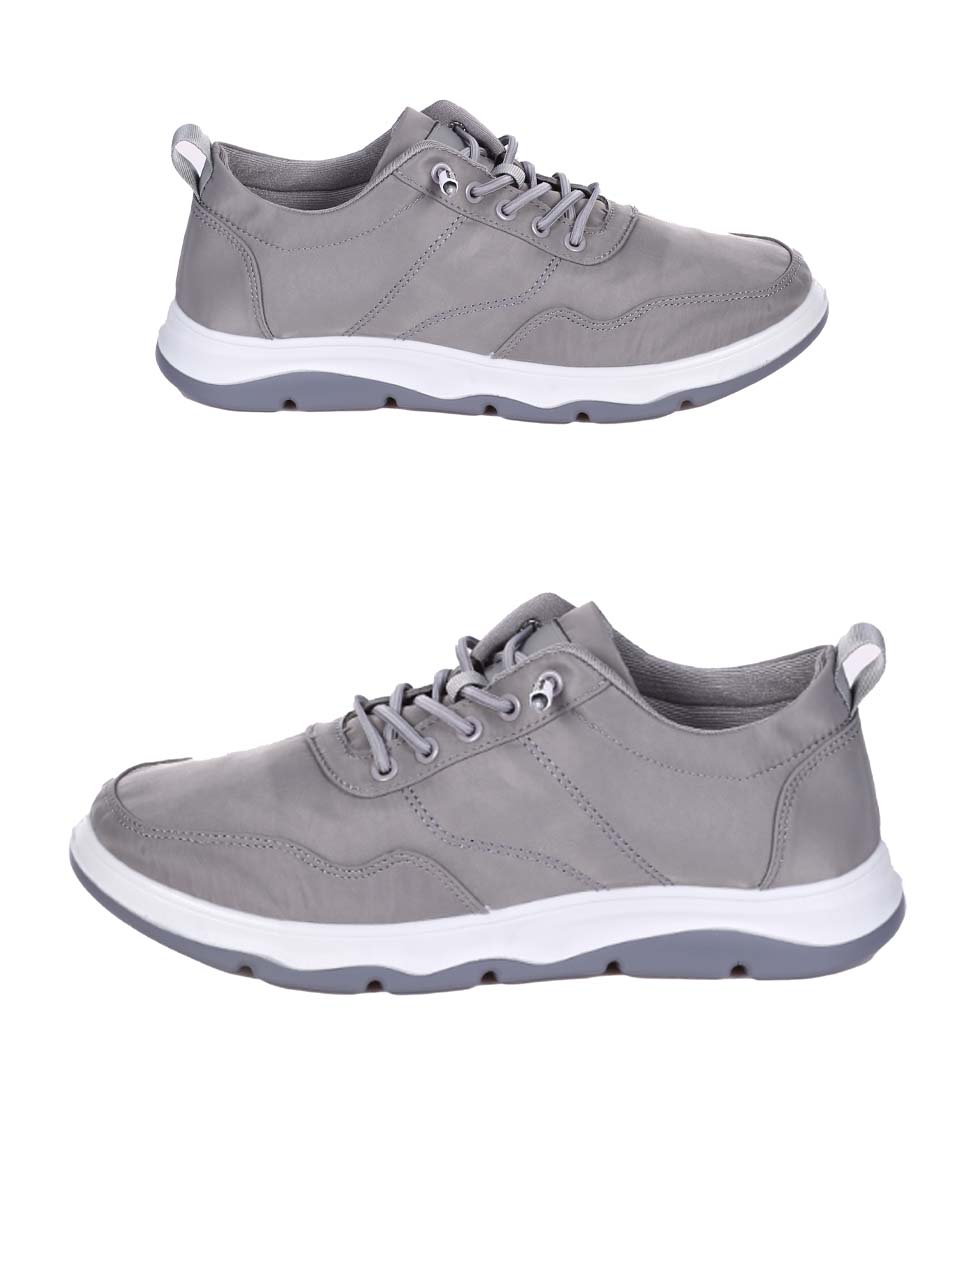 Ежедневни мъжки комфортни обувки в сиво 7H-24189 grey